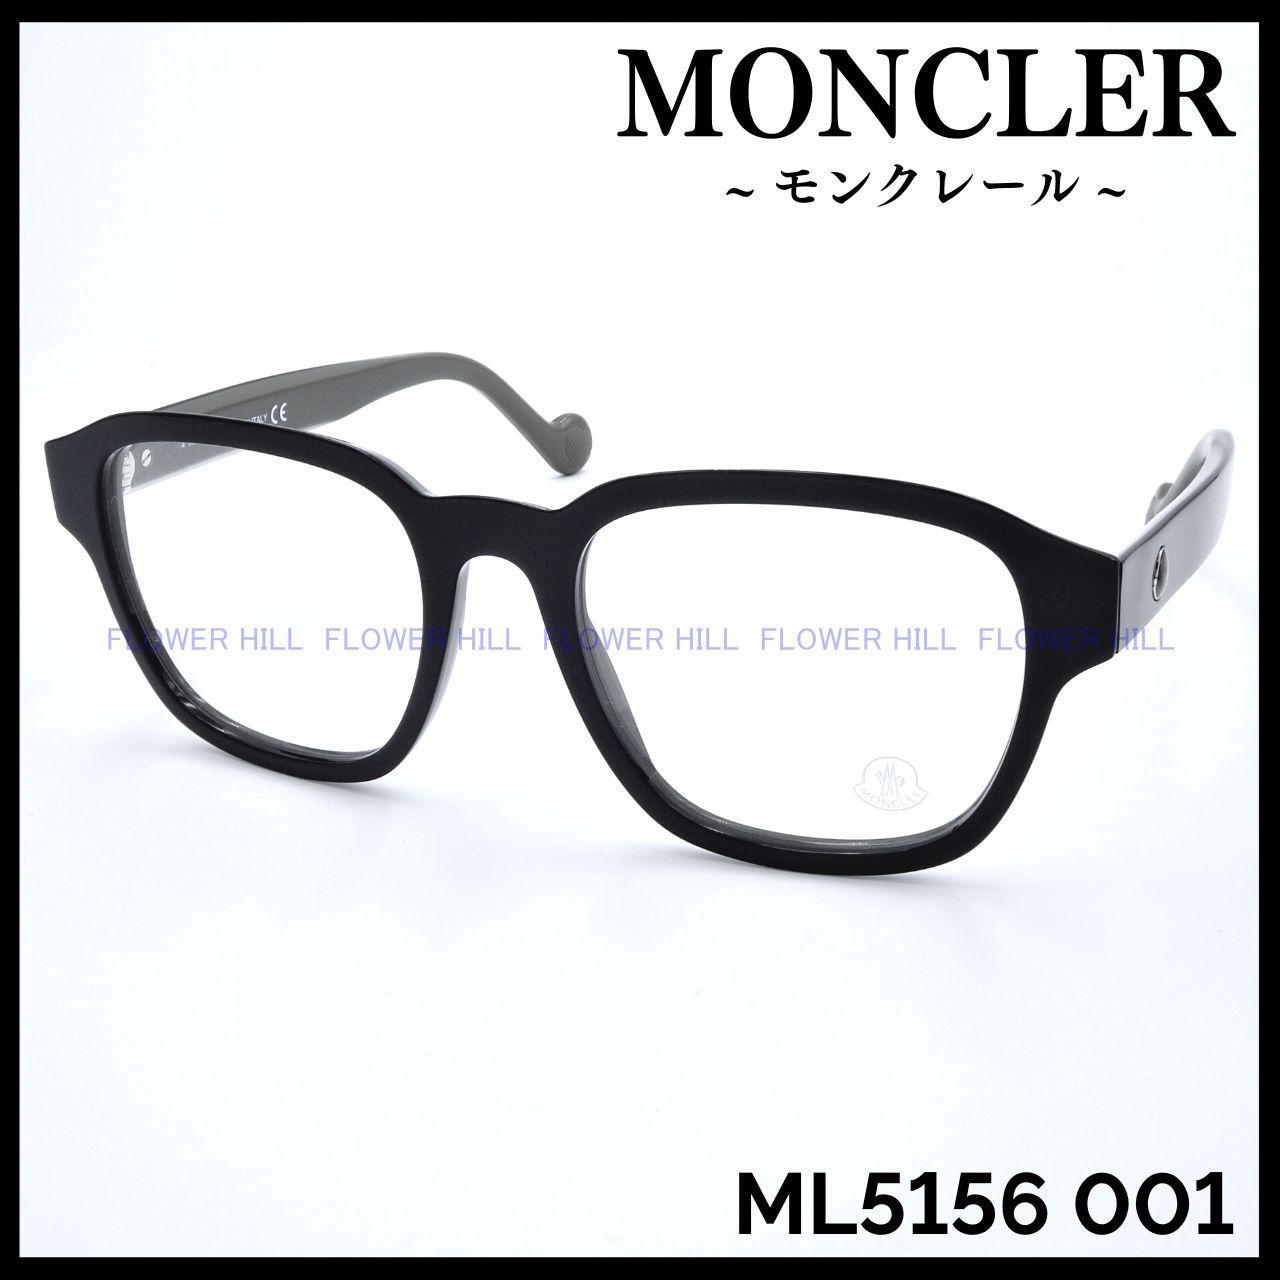 MONCLER モンクレール ML5156 001 メガネ フレーム ブラック・グレー